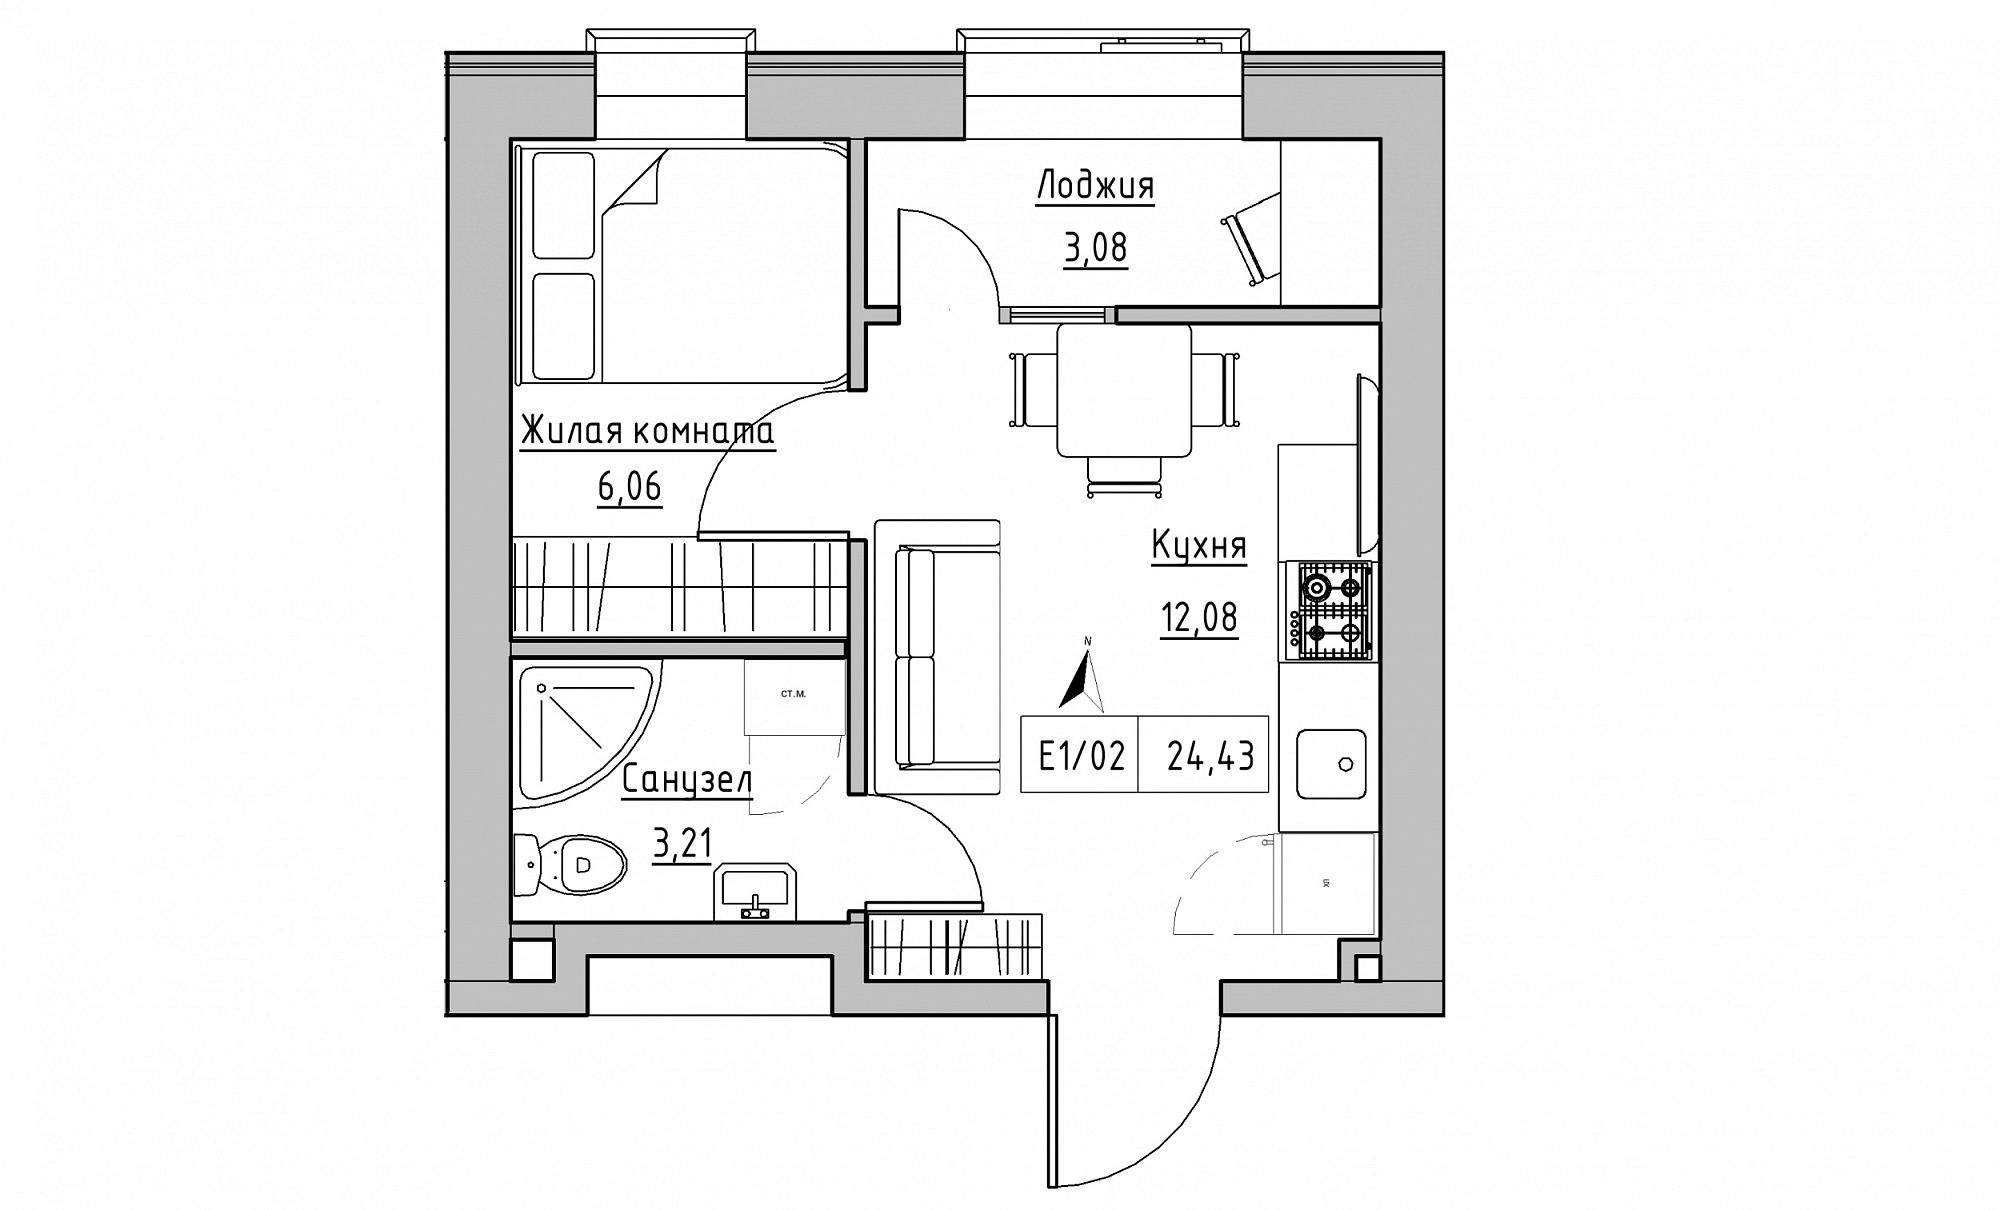 Планировка 1-к квартира площей 24.43м2, KS-015-04/0014.